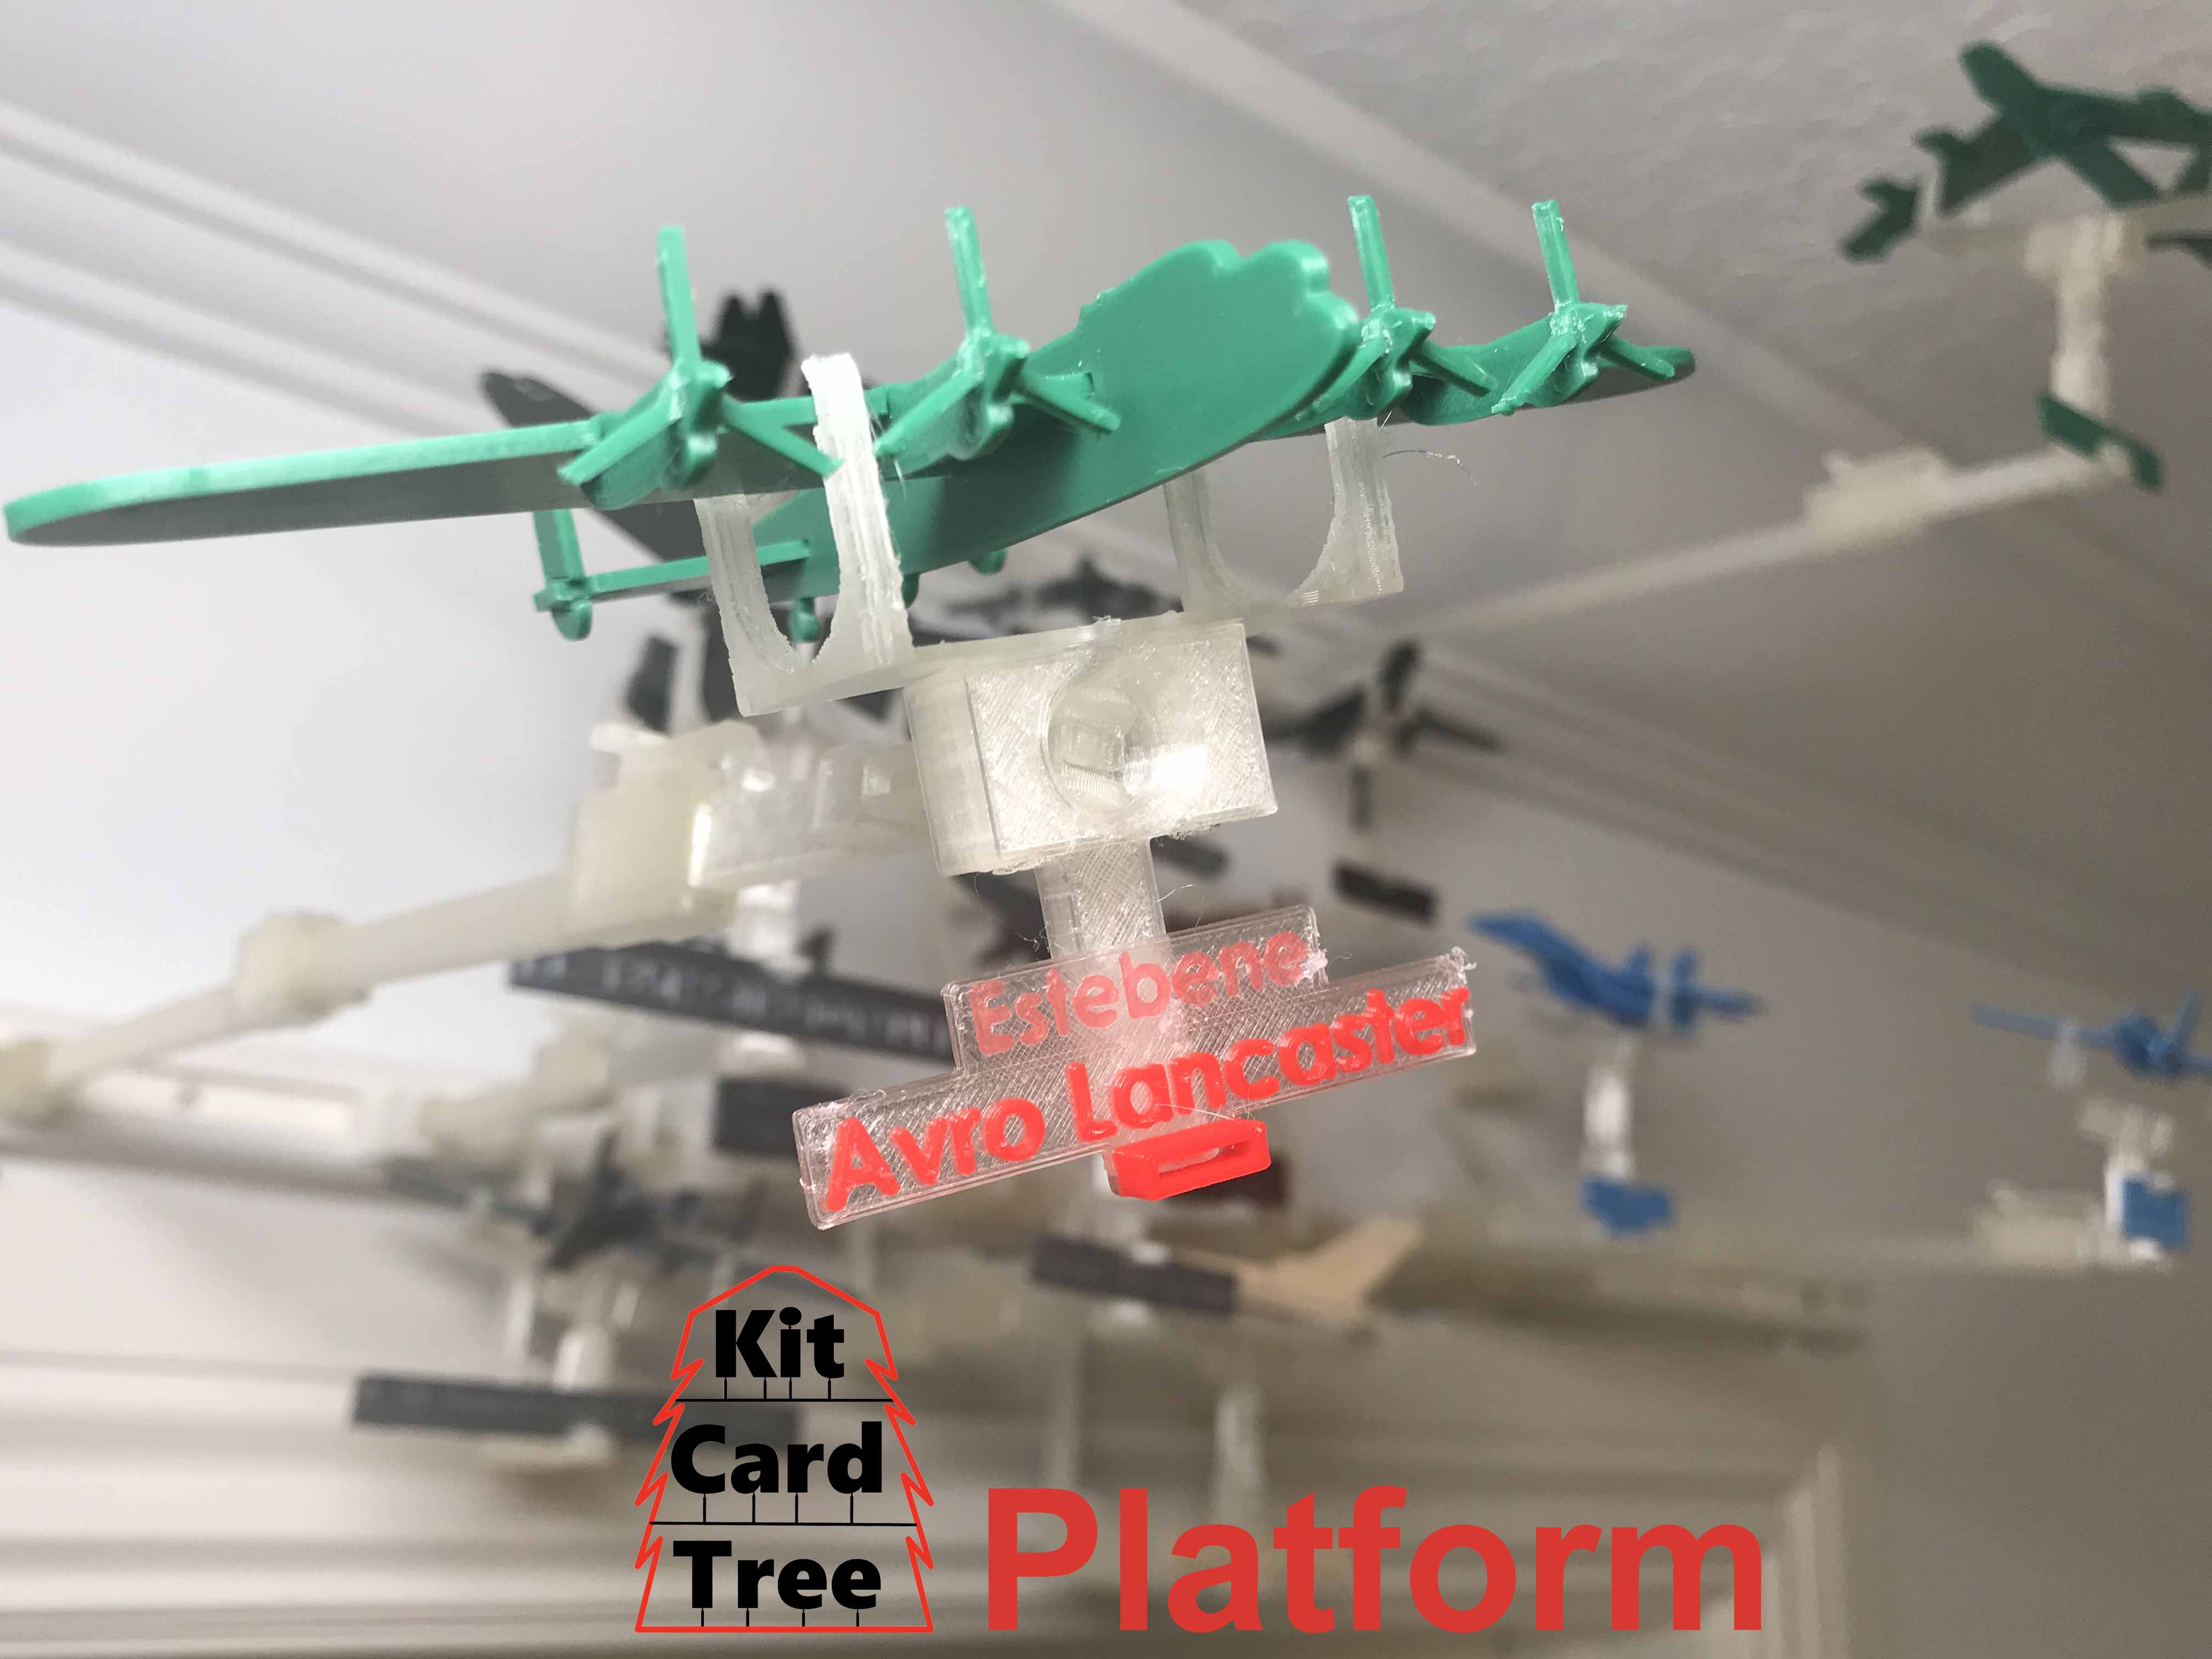 Kit Card Tree platform for the Avro Lancaster by Estebene